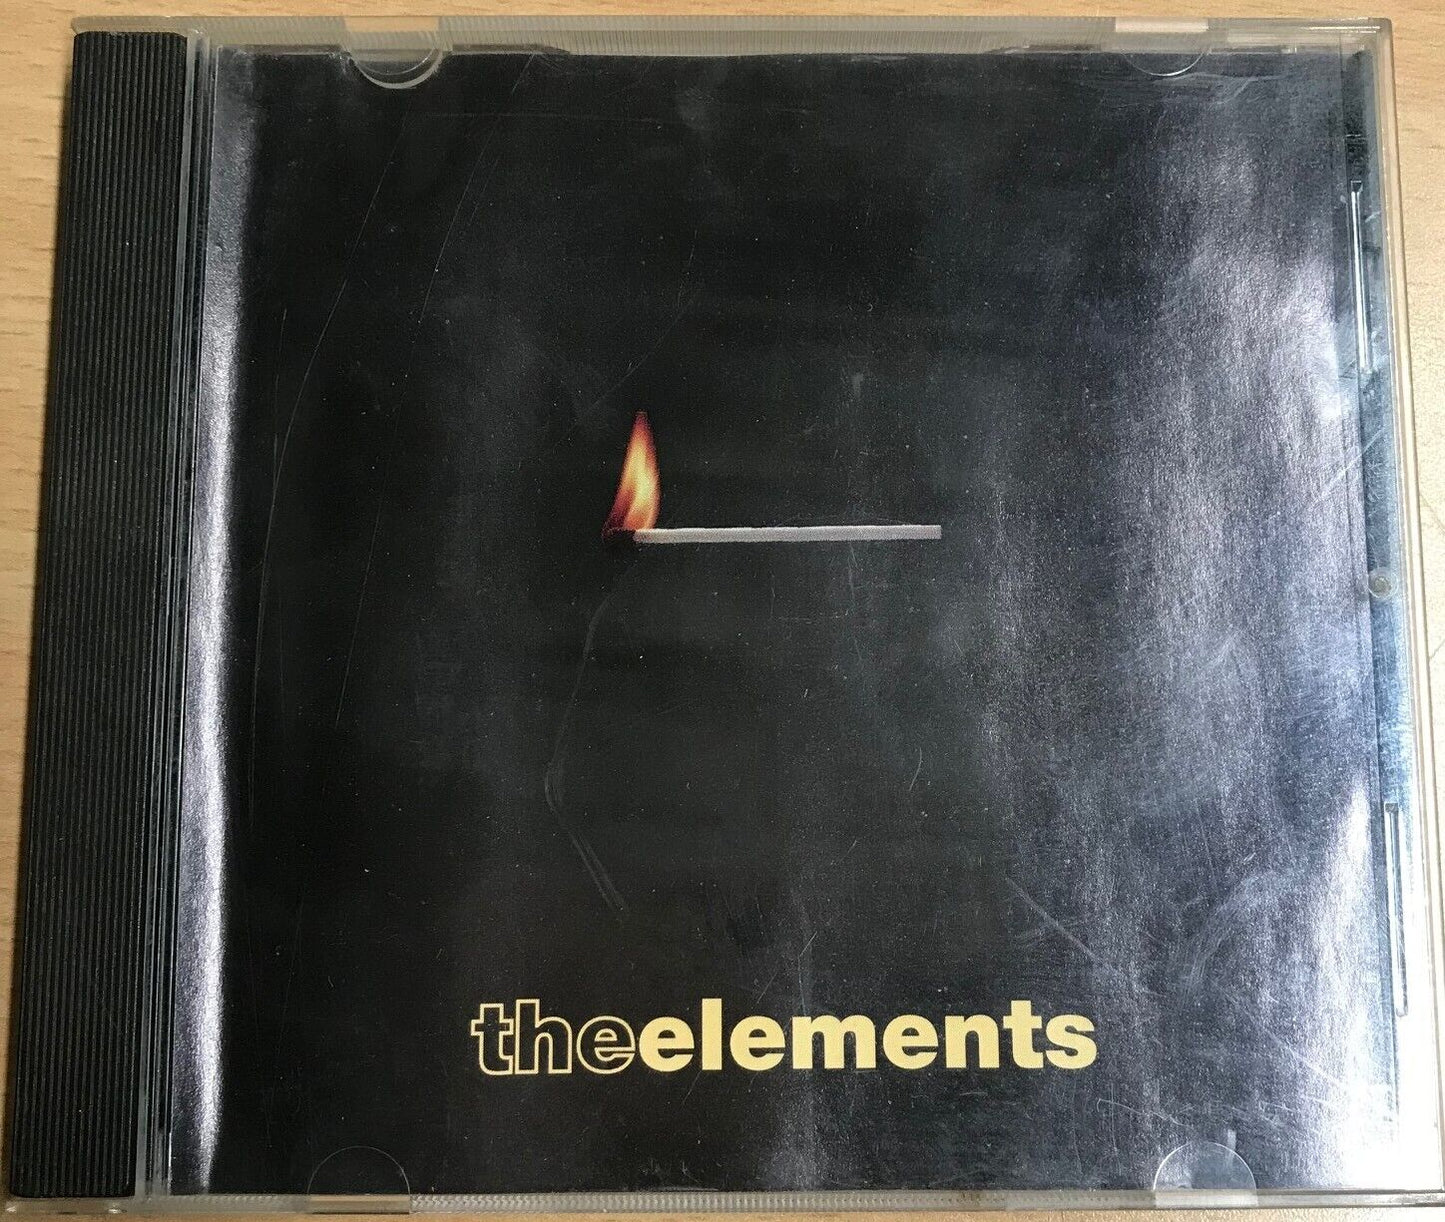 MUSIC CD IN CASE - VARIOUS ARTISTS - THE ELEMENTS - Bundaberg Rum/Mushroom Re...